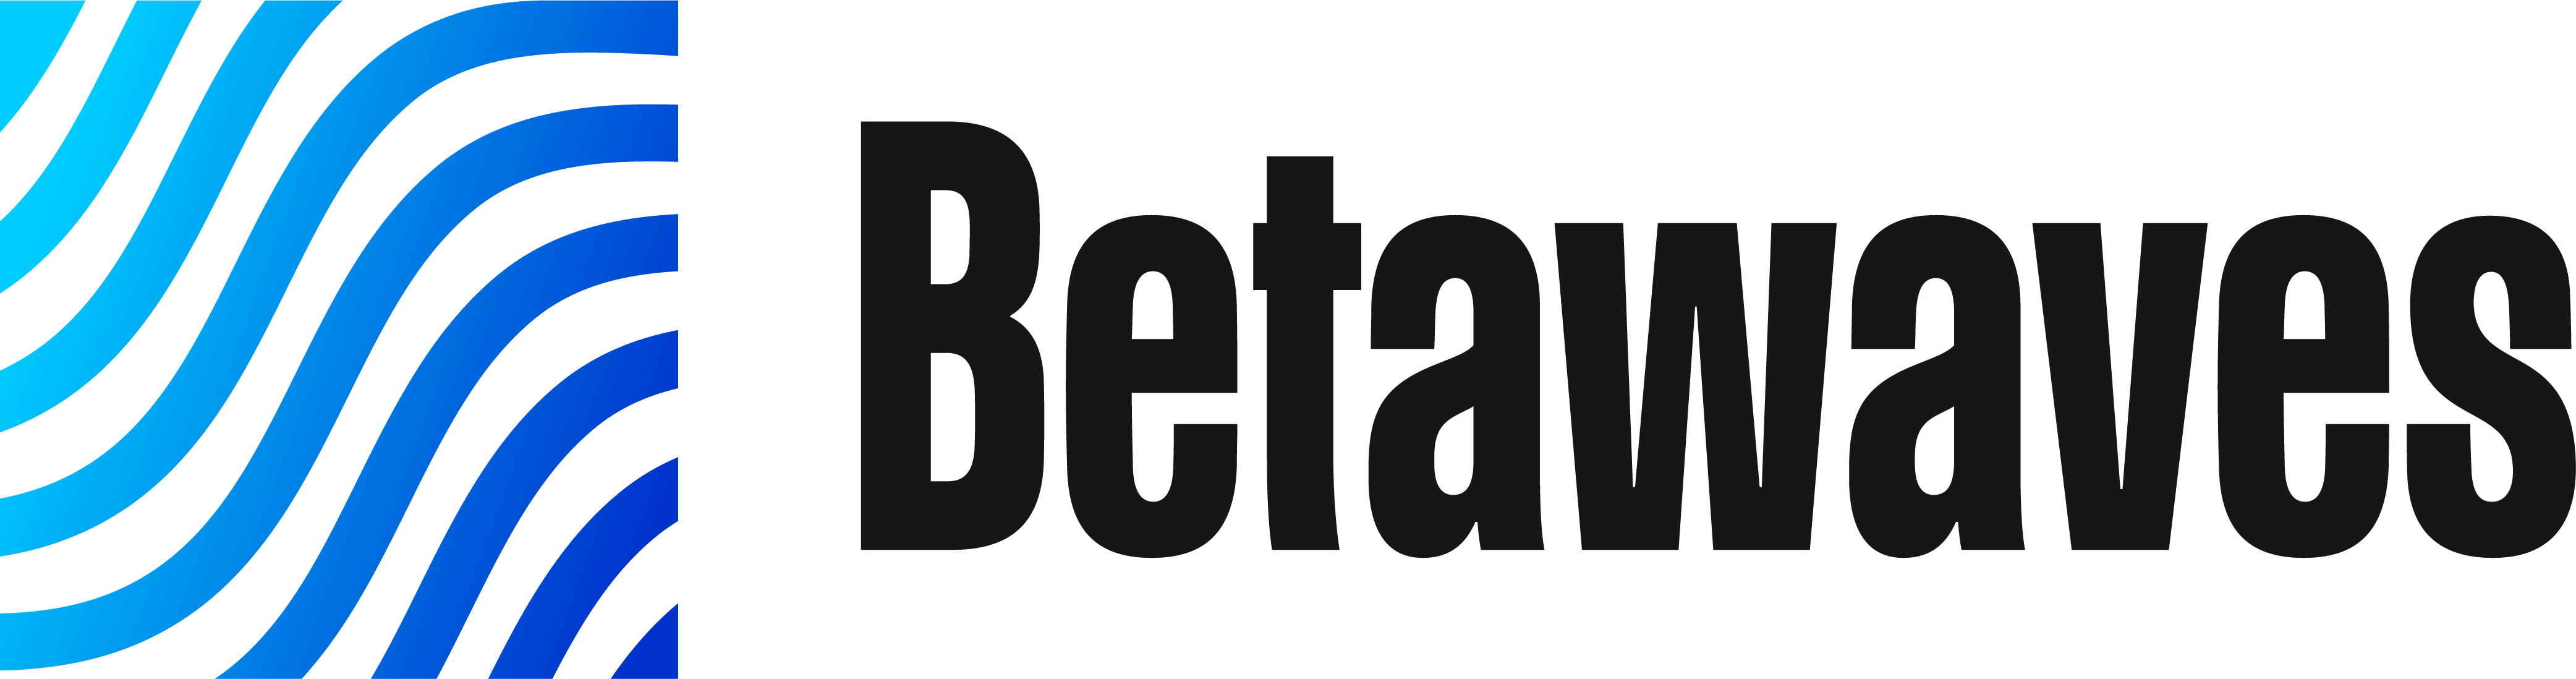 H-Betawaves 